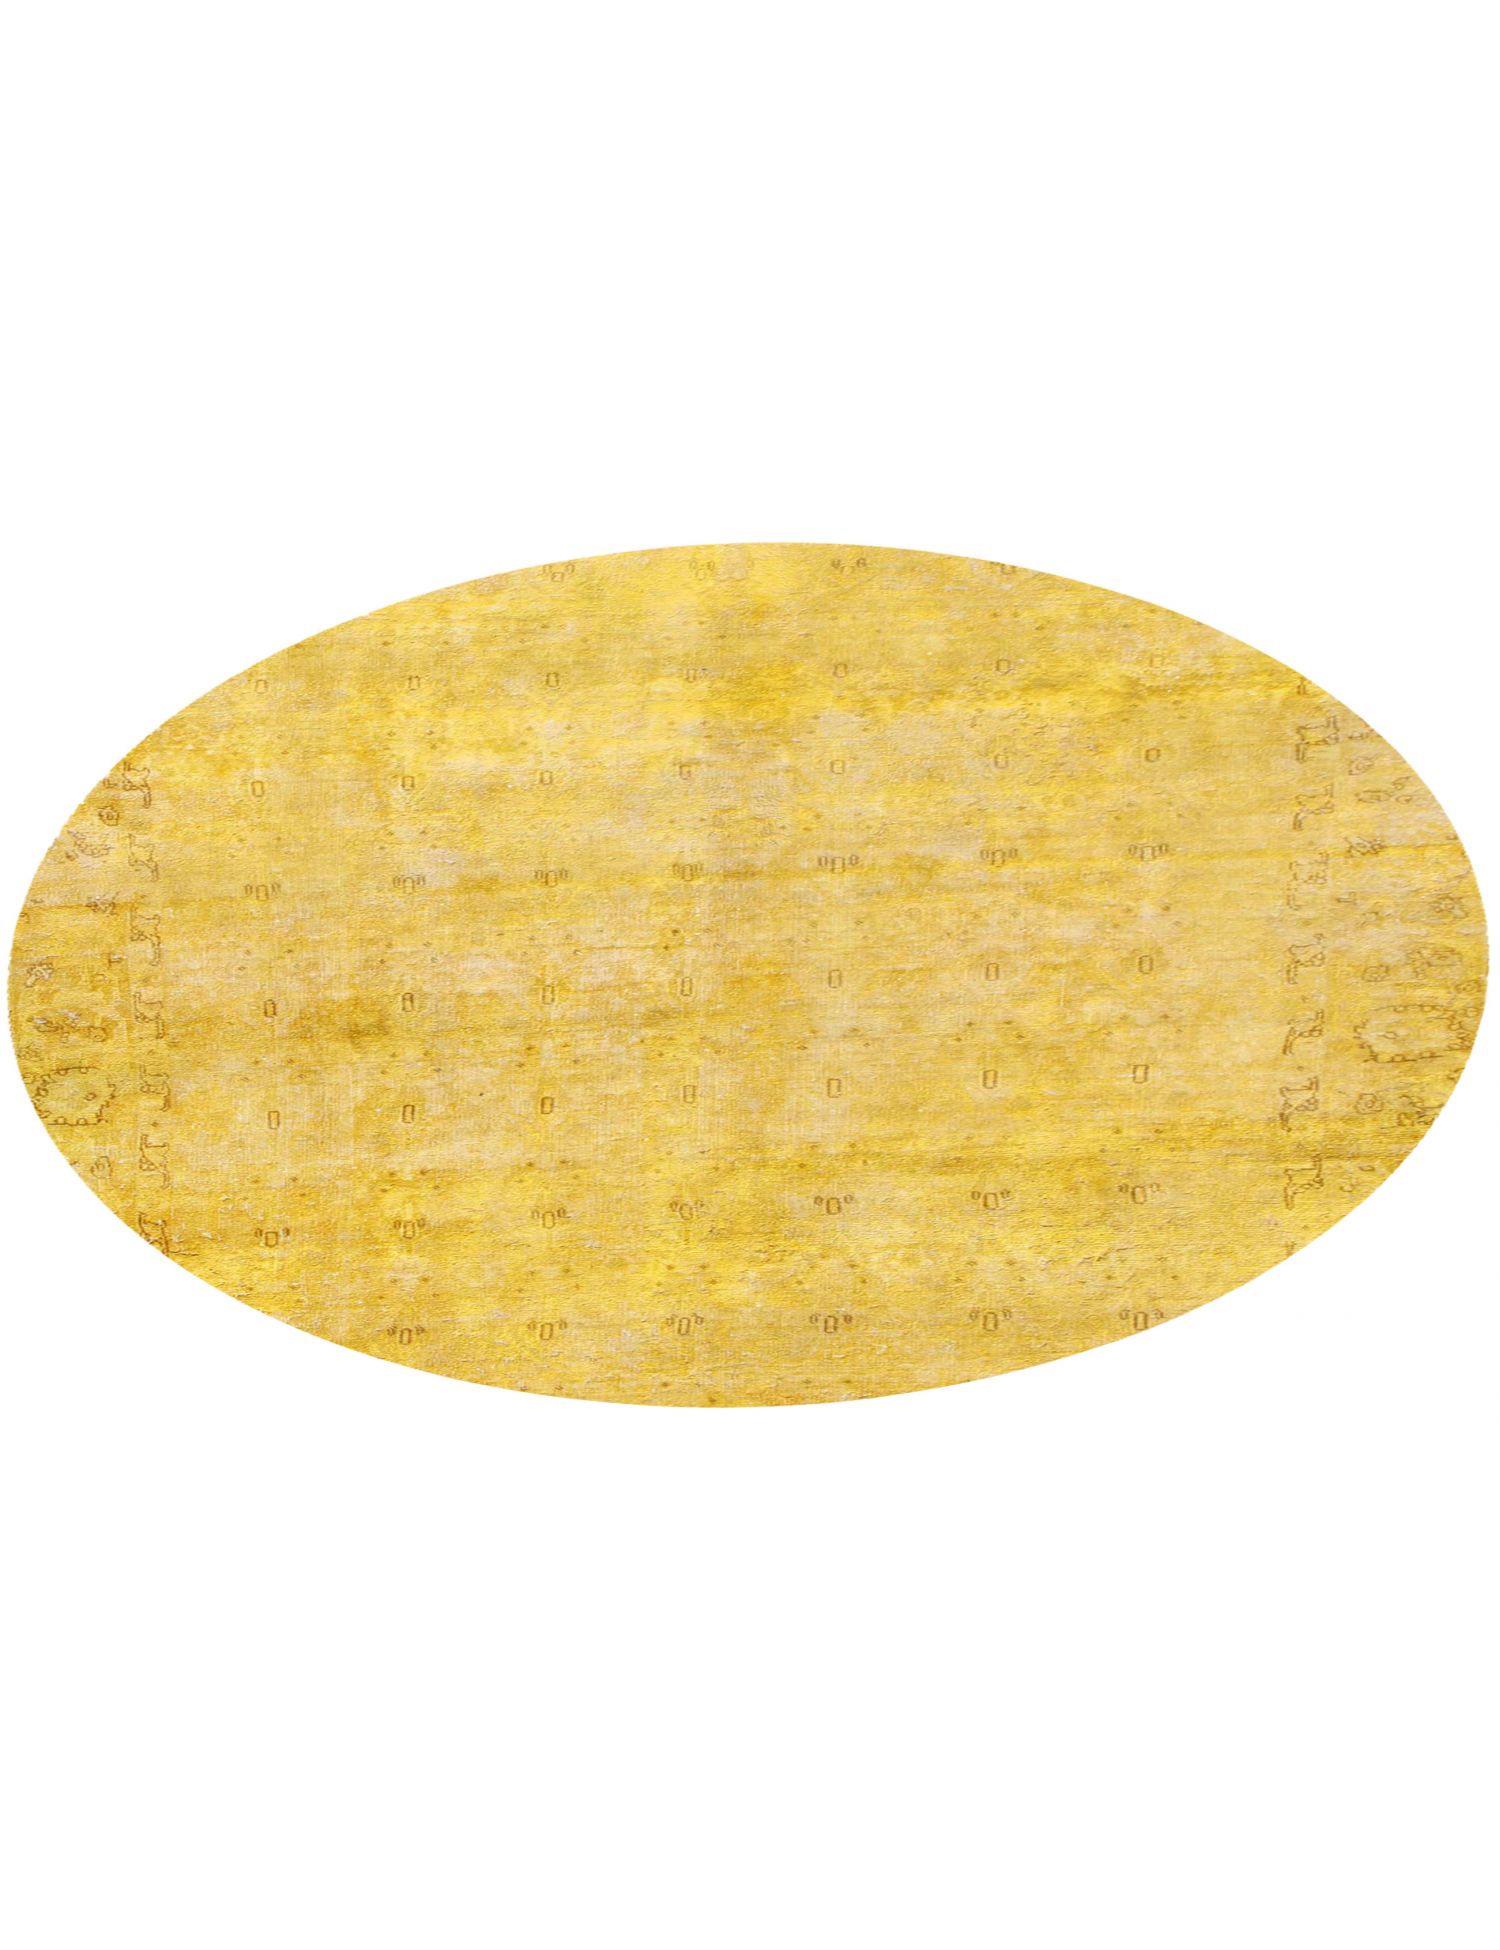 Rund  Vintage Teppich  gelb <br/>190 x 190 cm